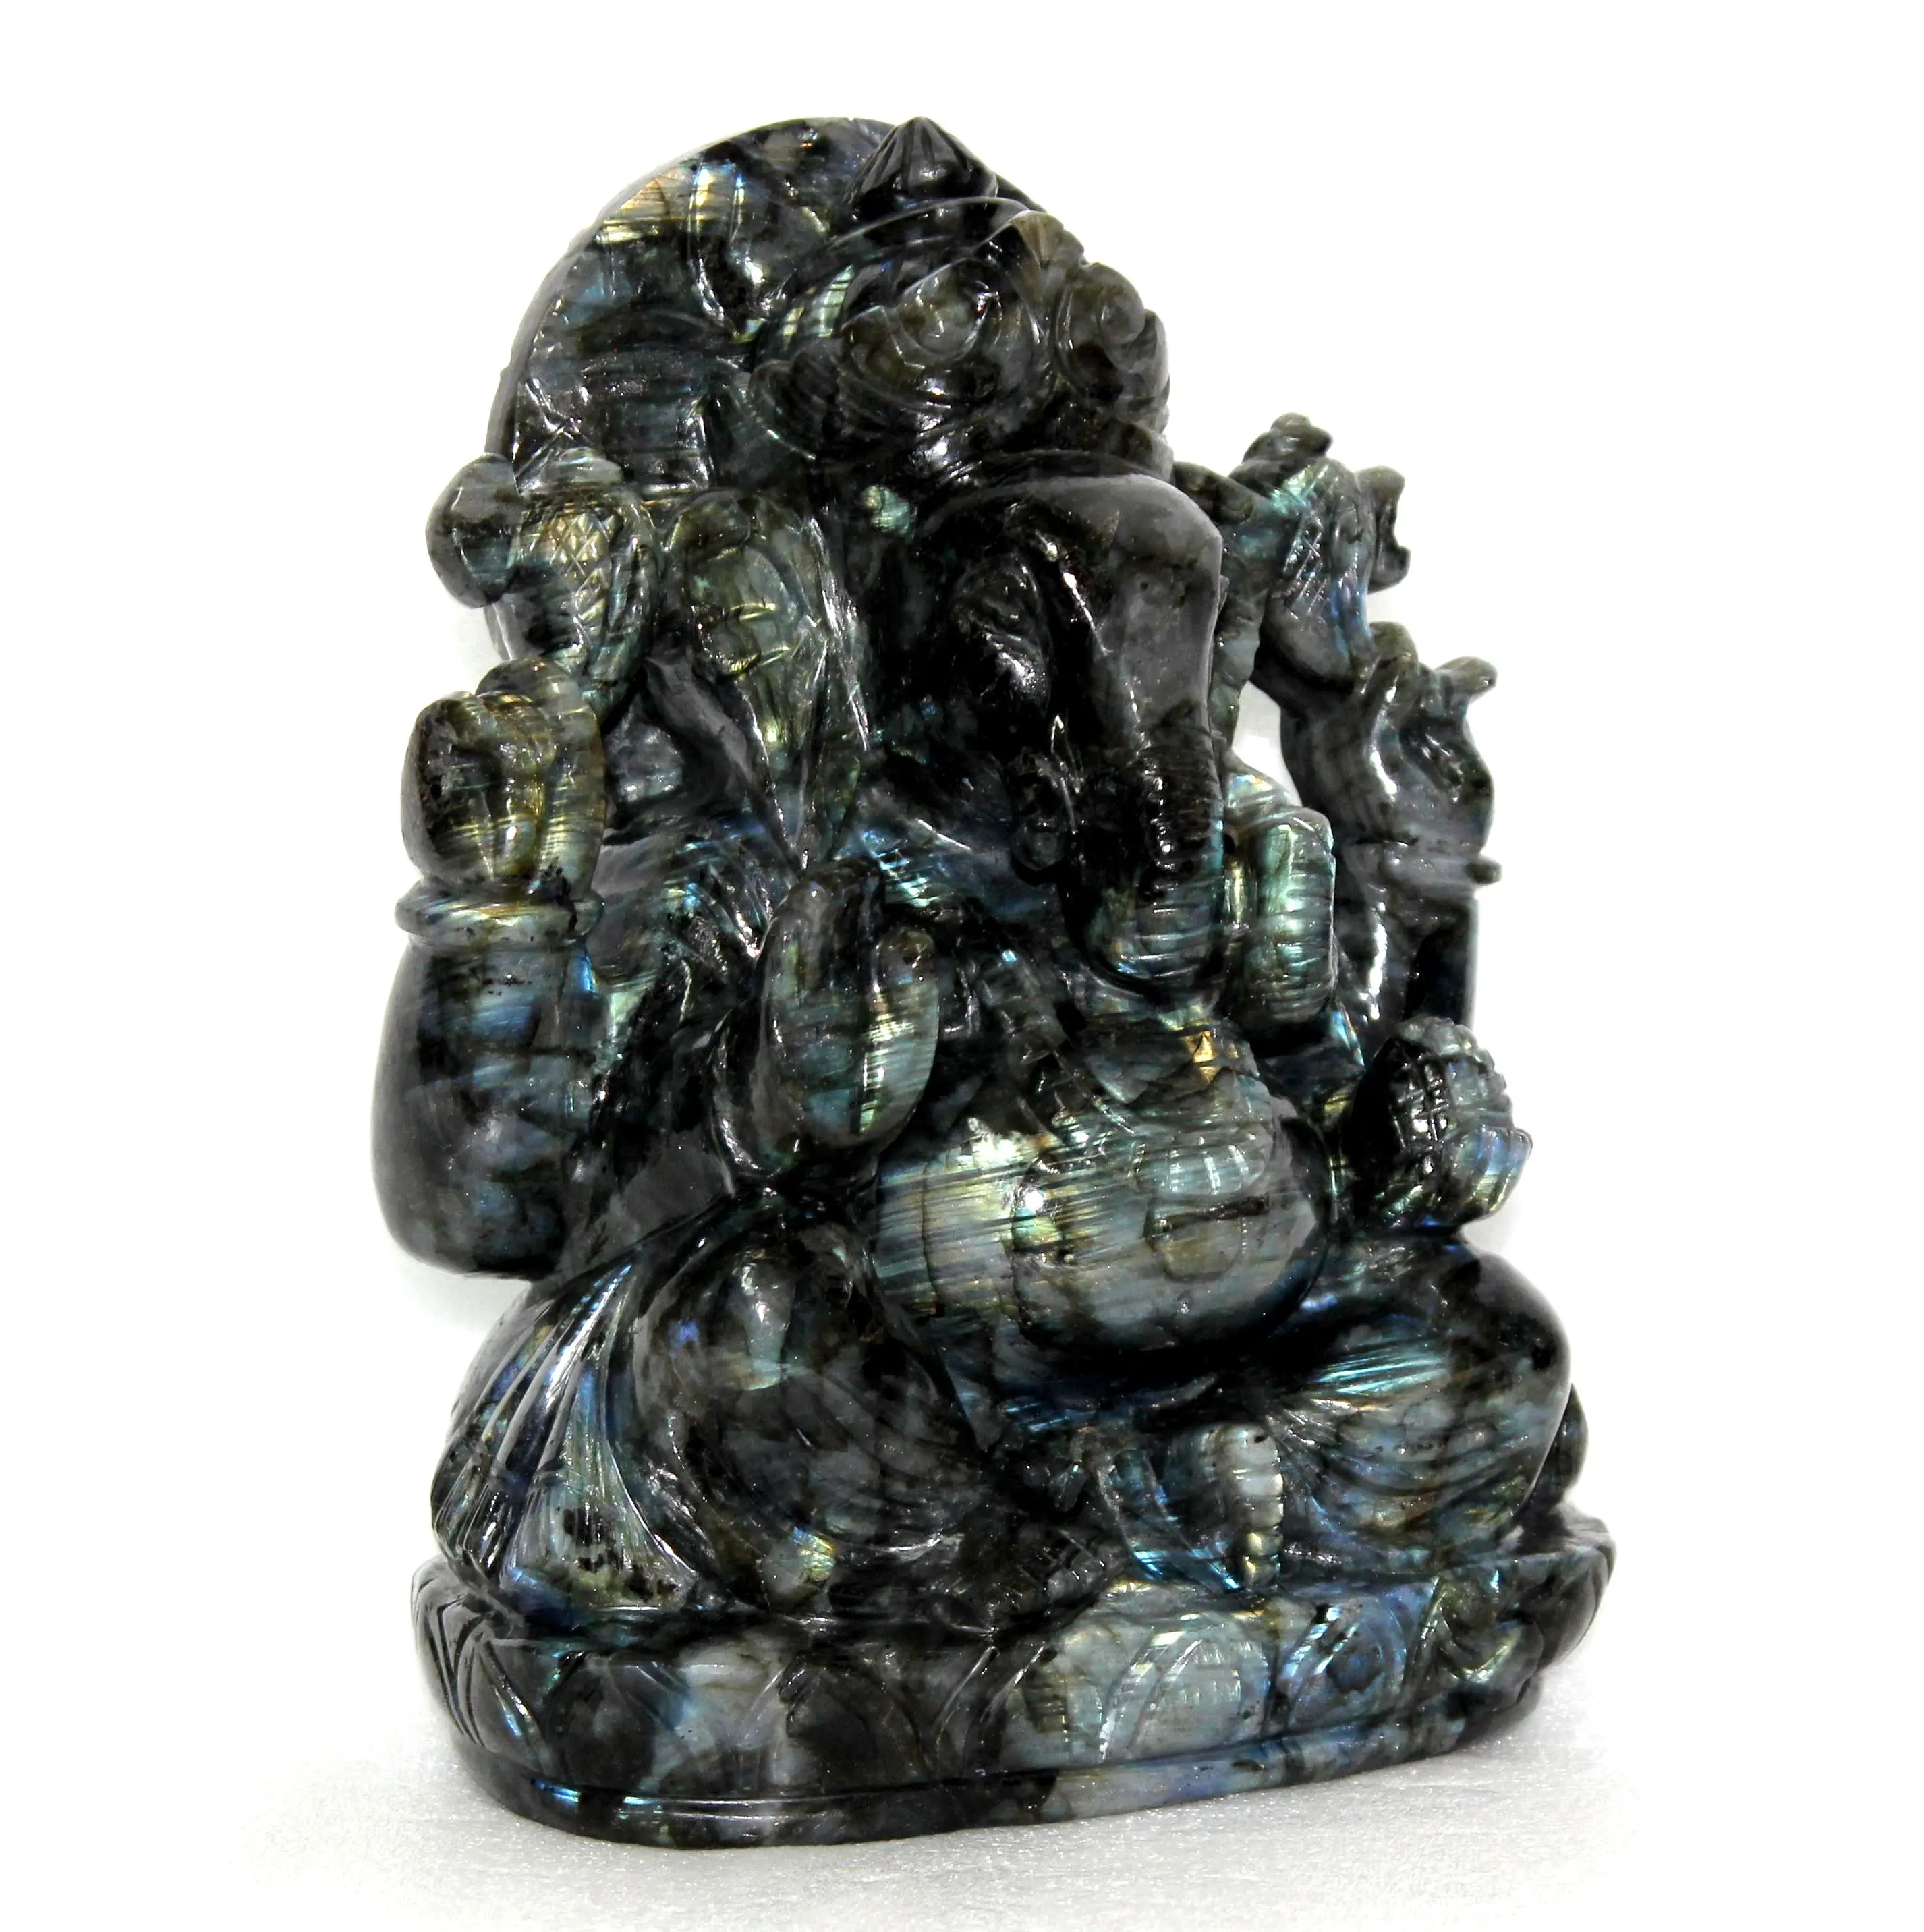 Kaufen Sie hochwertige natürliche hand gefertigte Marke in Indien Labradorit Ganesha Skulptur hand geschnitzte Statue Figur Schnitzen